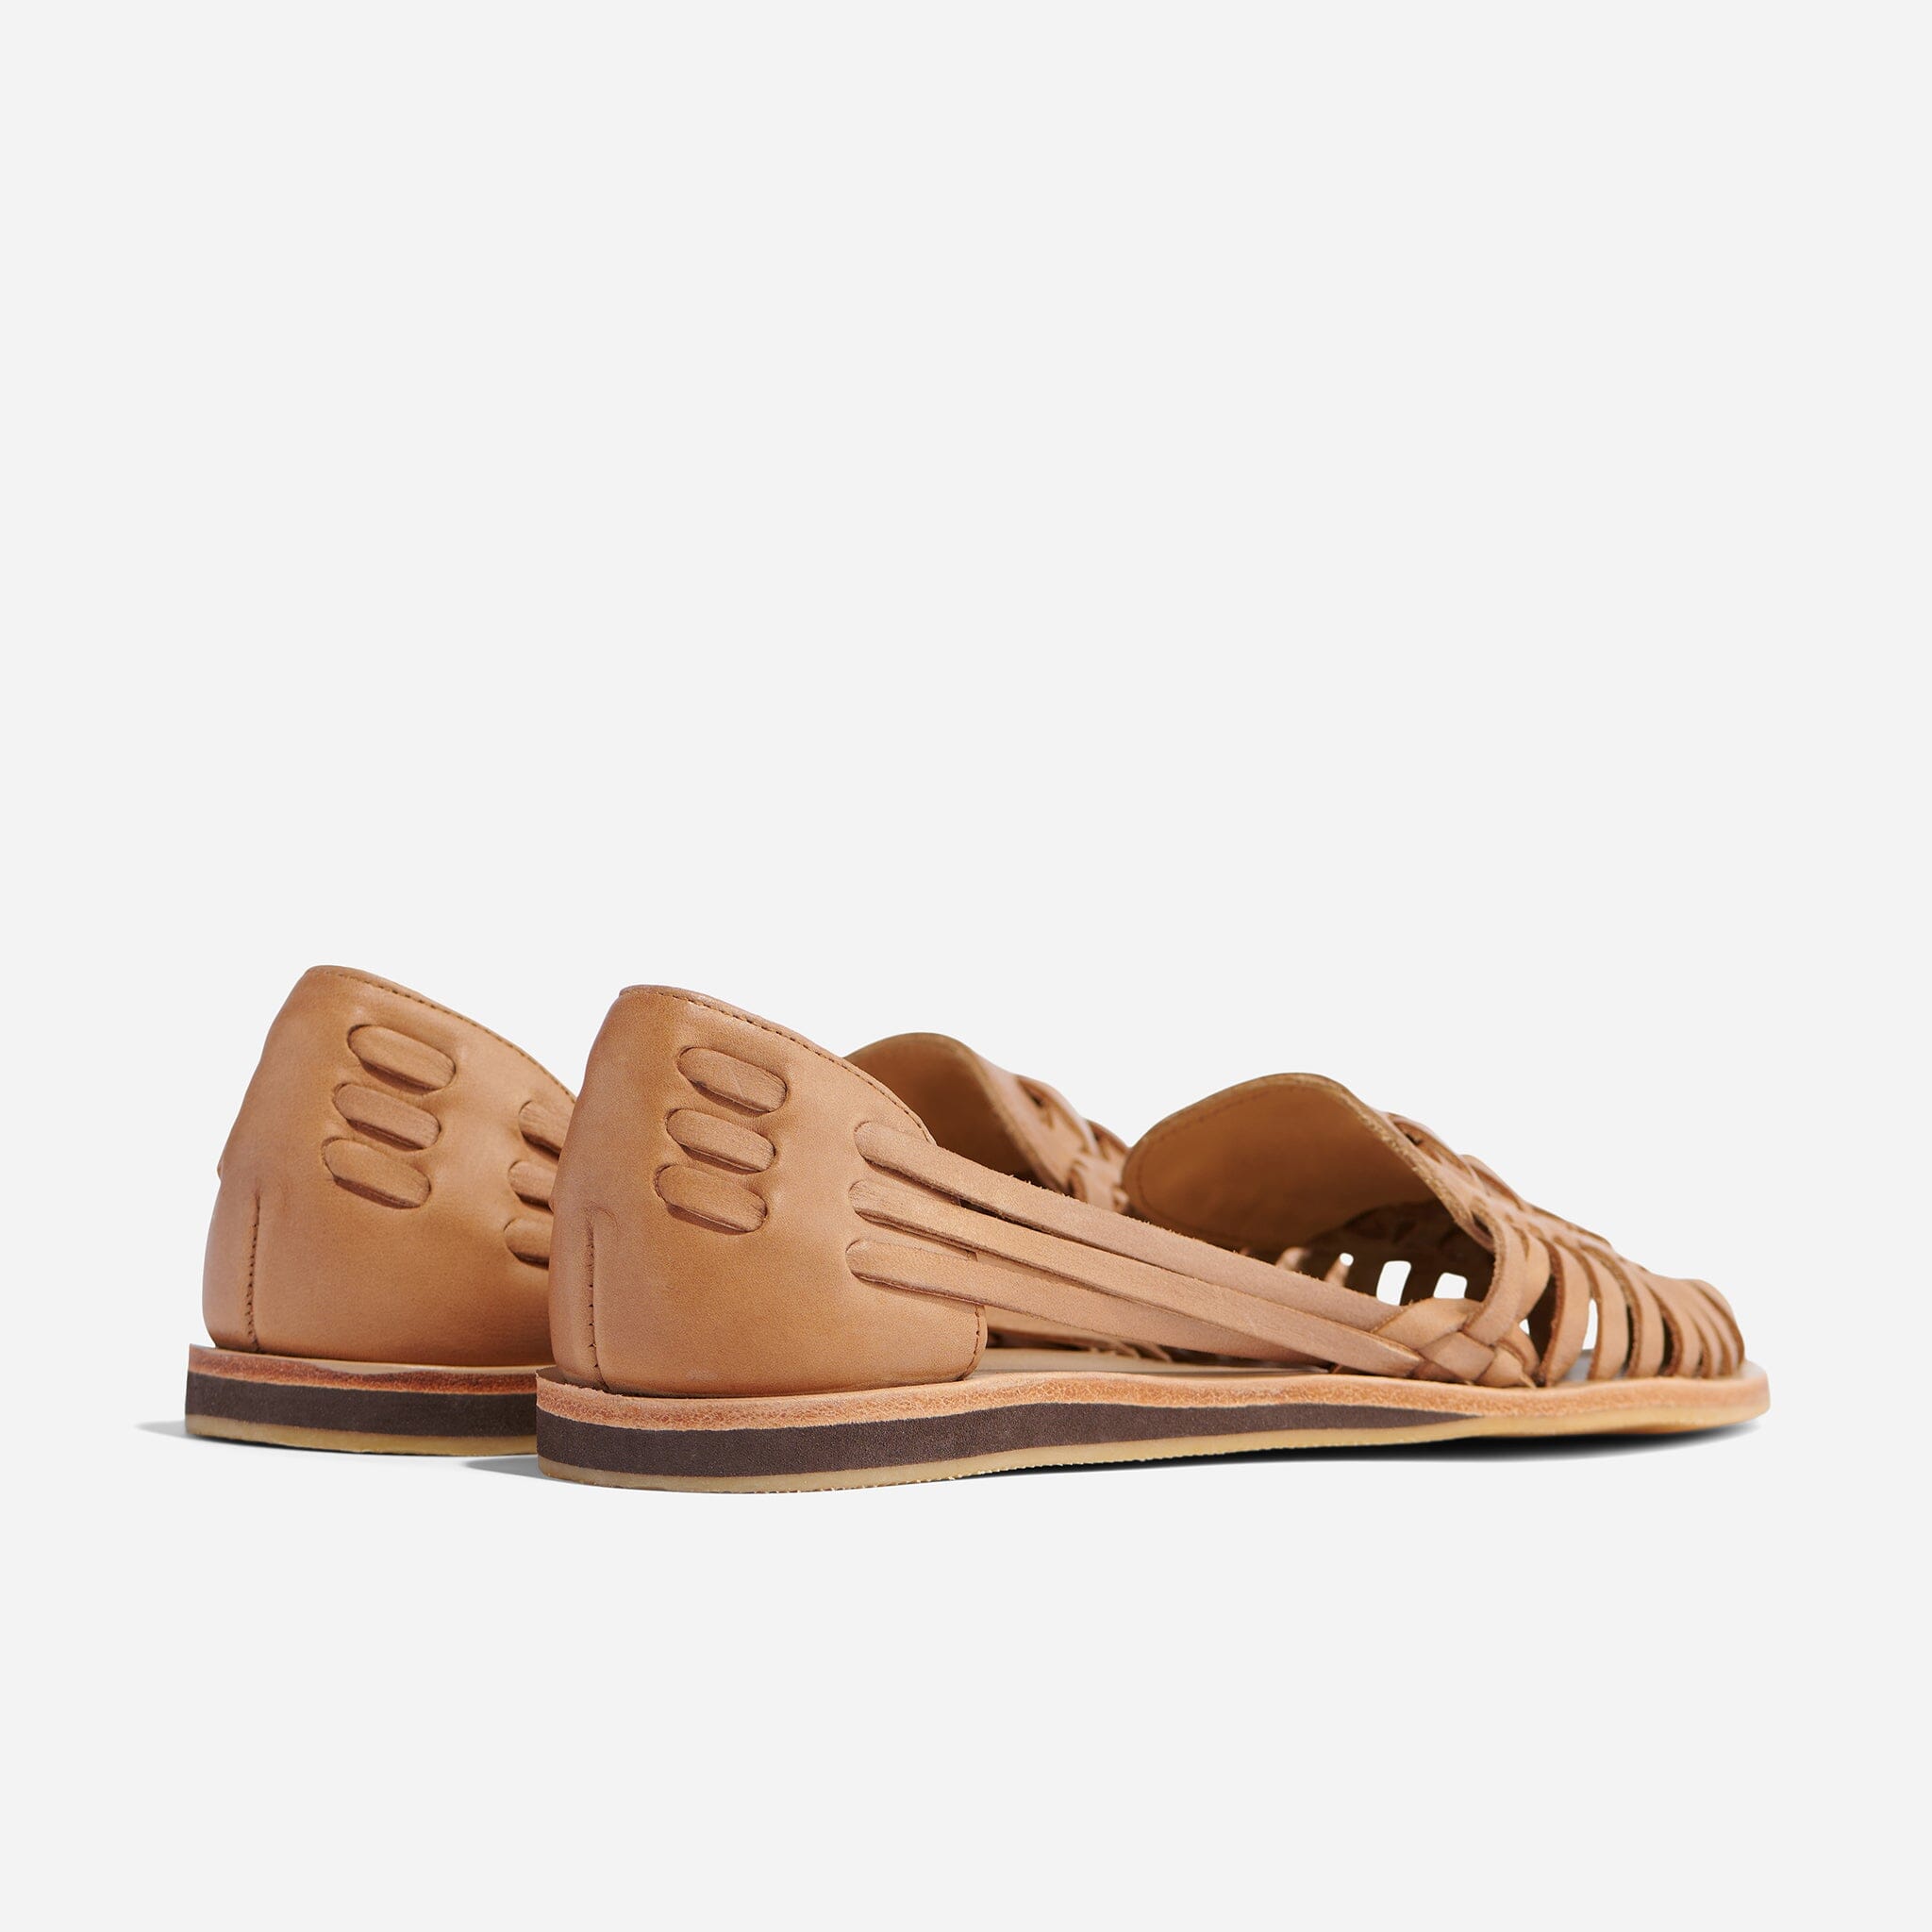 Ledero Tan Leather Slip on Sandal for men | Buy Stylish Sandals for Men |  LEDERO